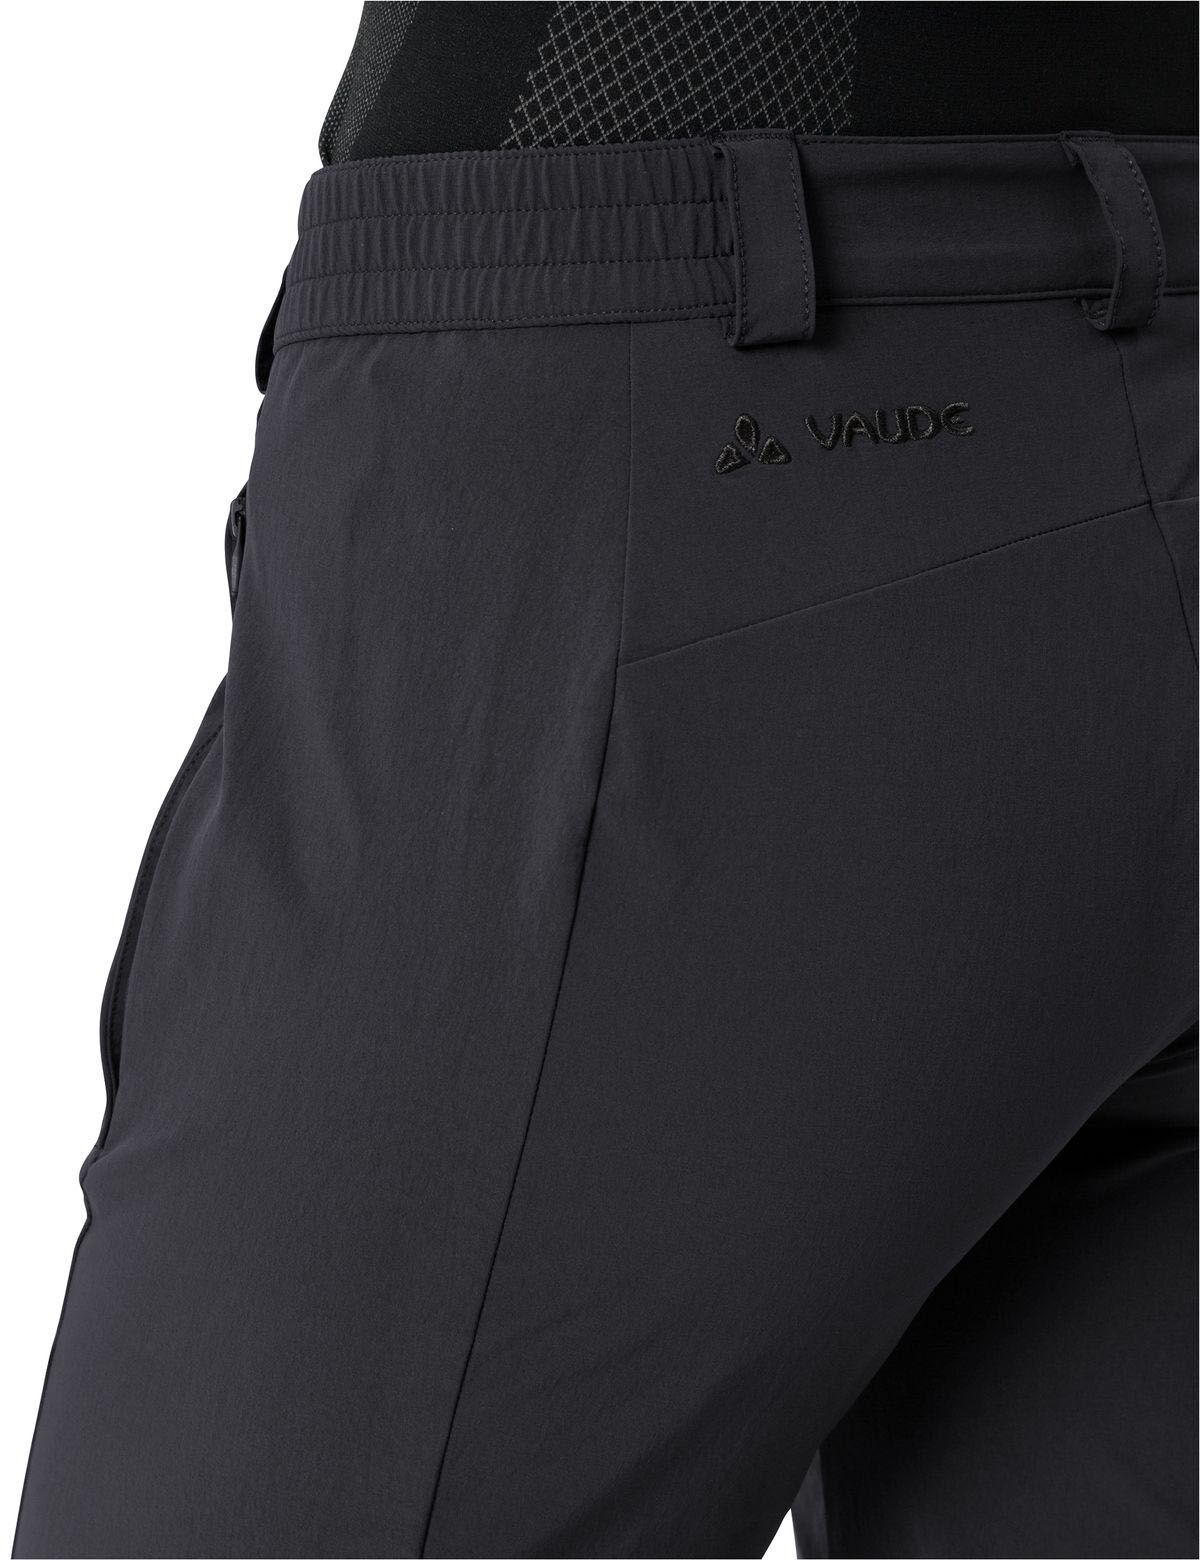 Vaude Wo Yaras 3/4 Pants black 38